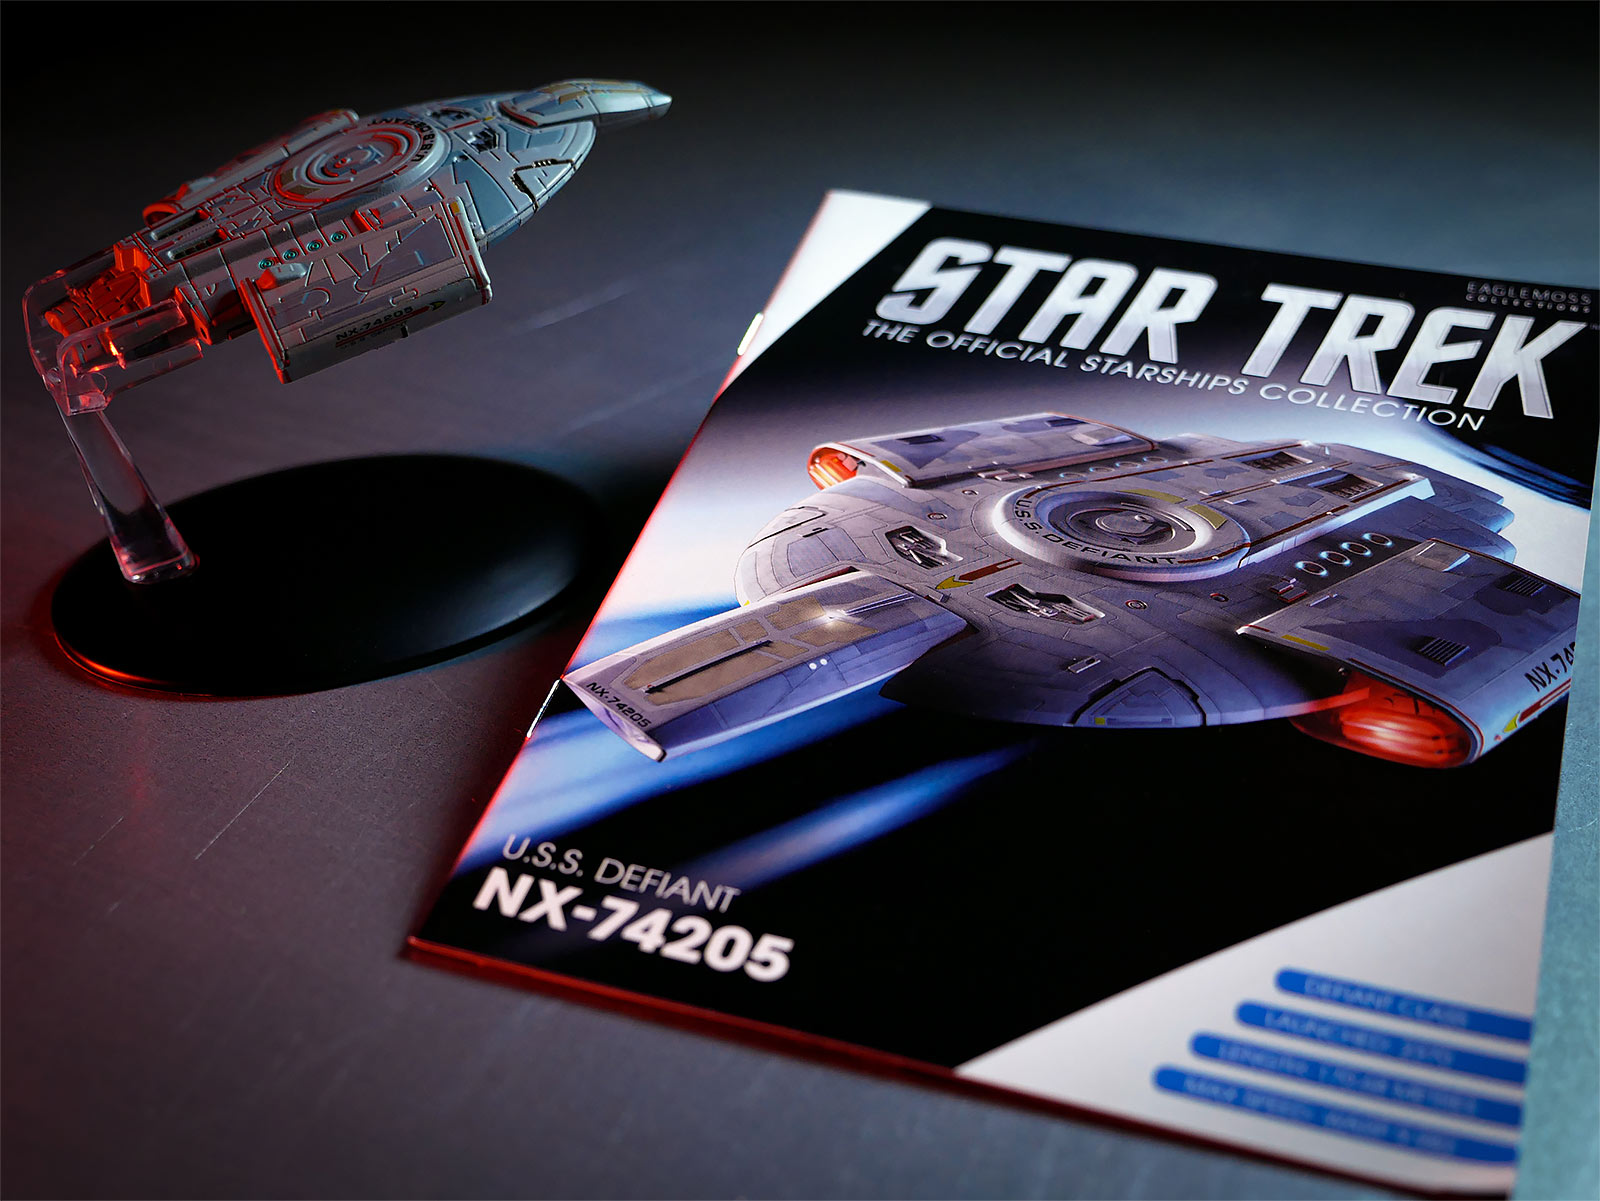 Star Trek - Raumschiff U.S.S. Defiant NX-74205 Hero Collector Figur